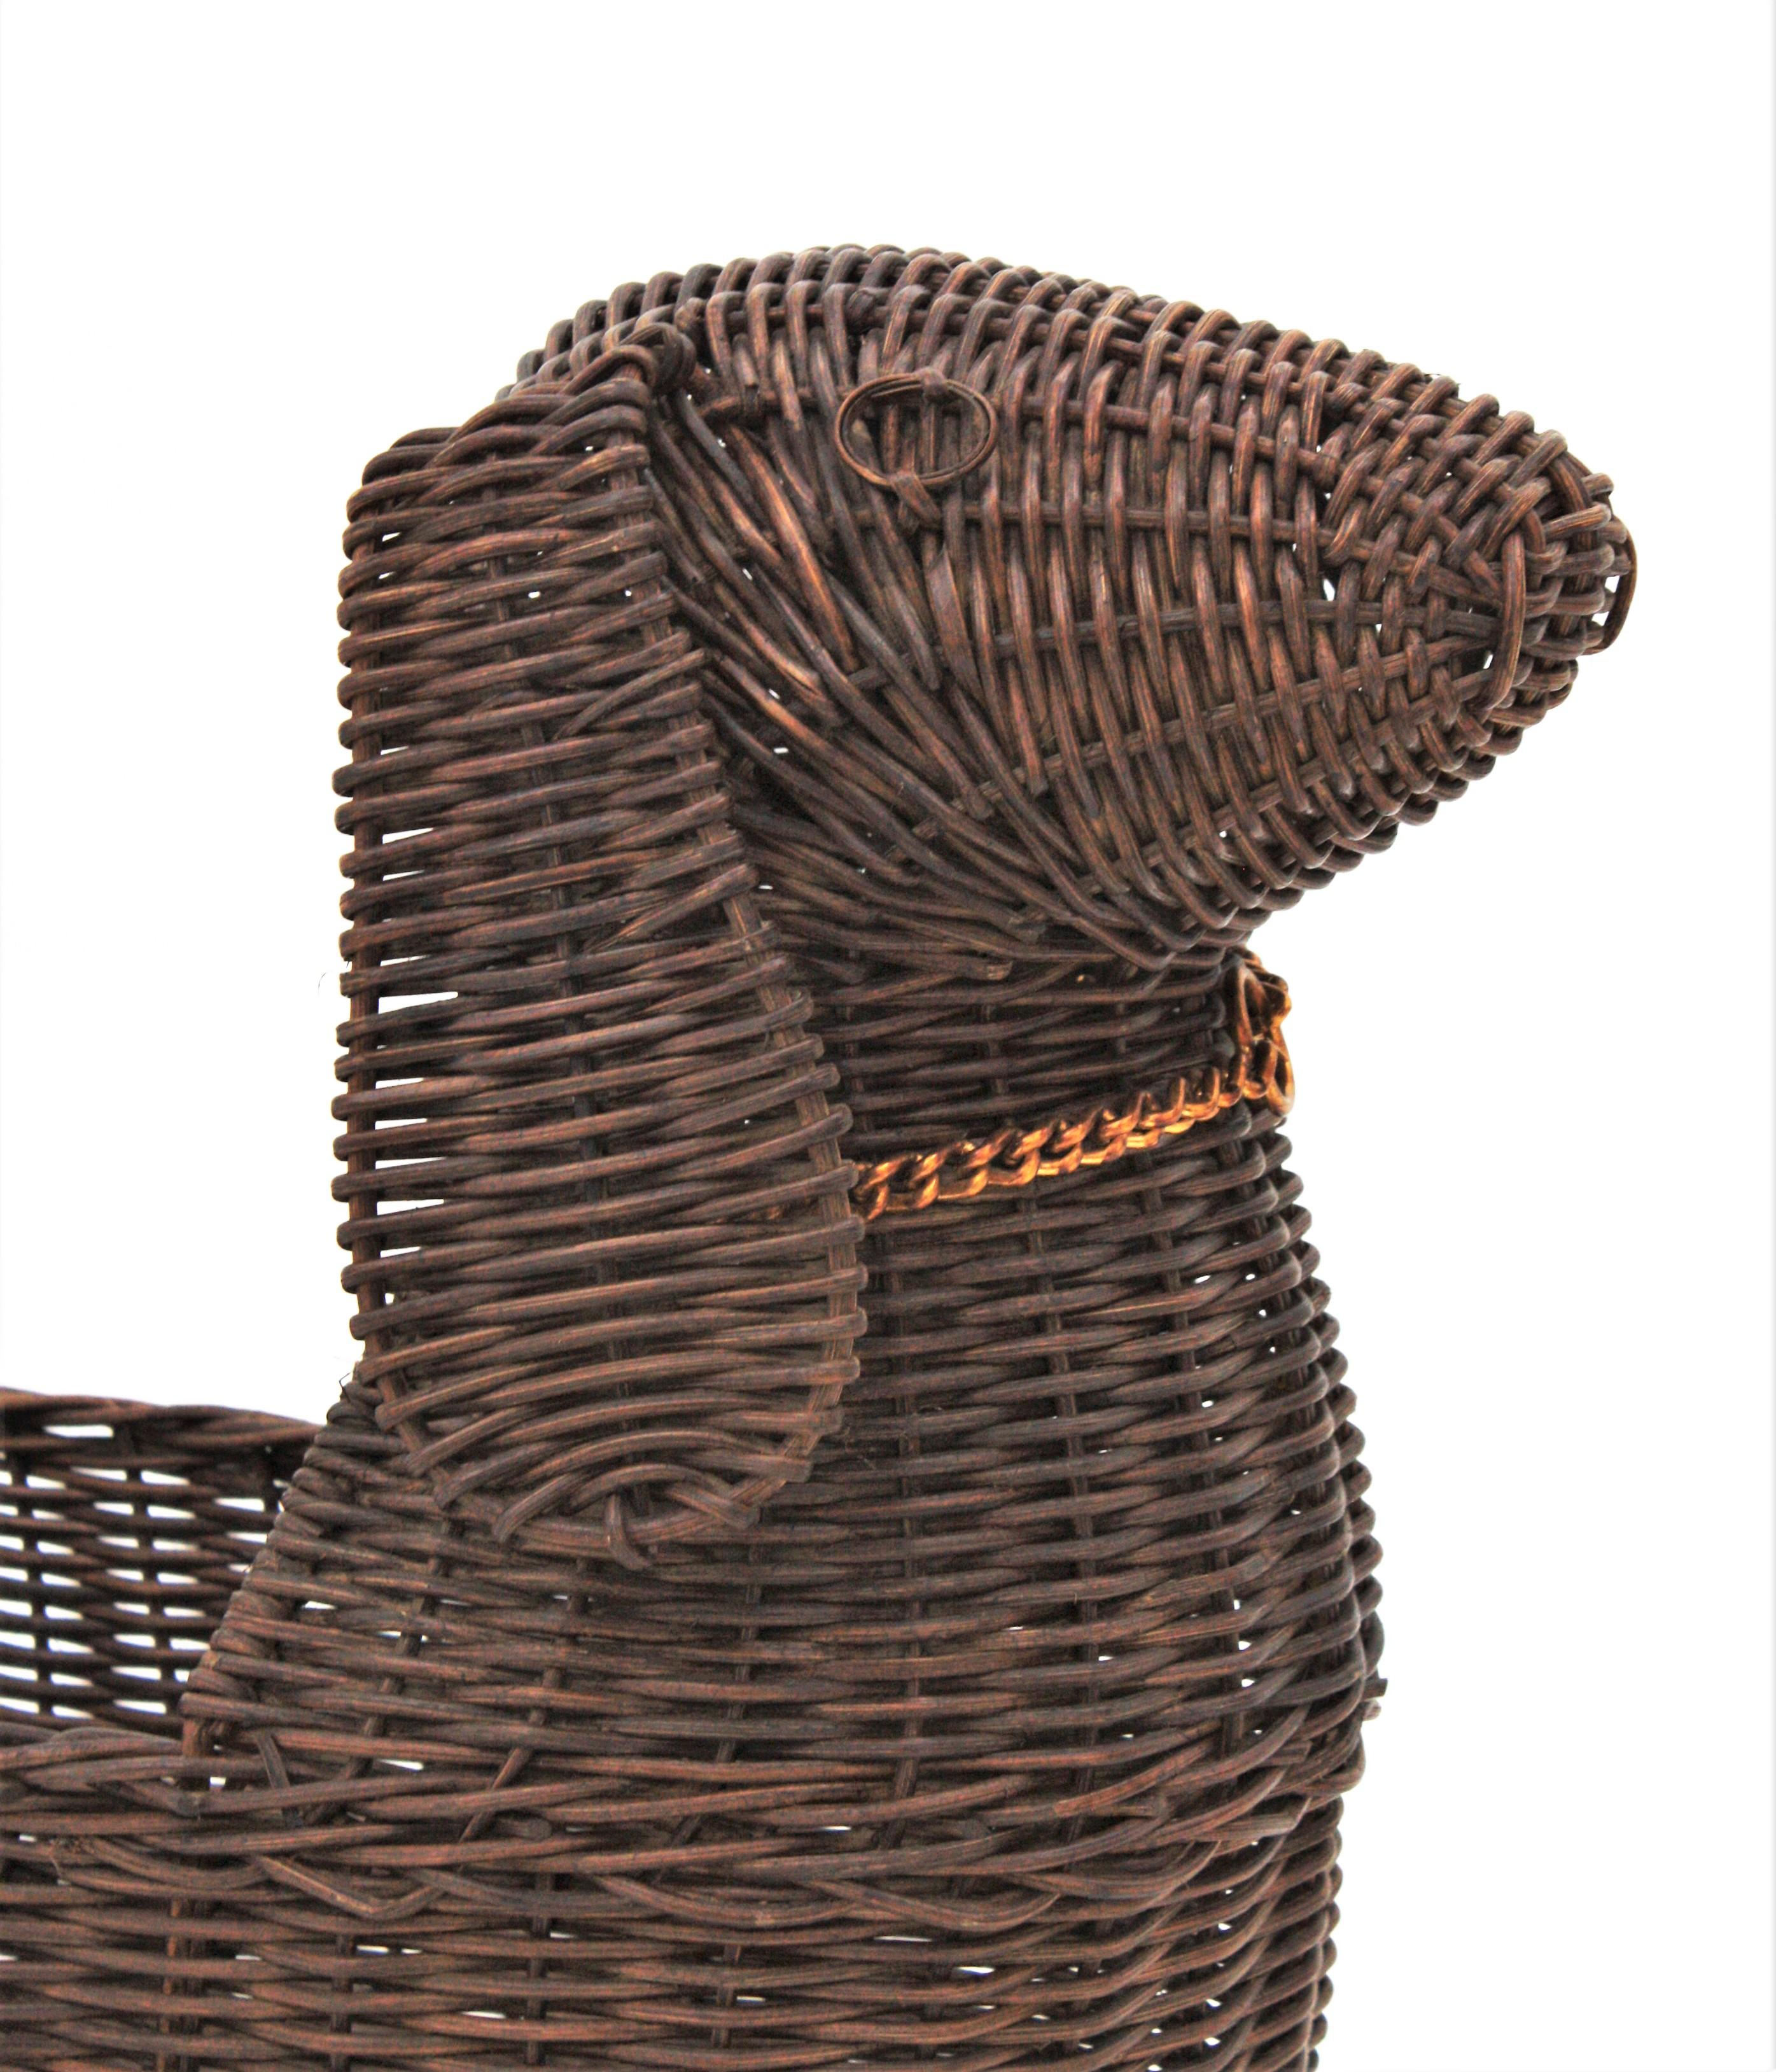 dog shaped basket